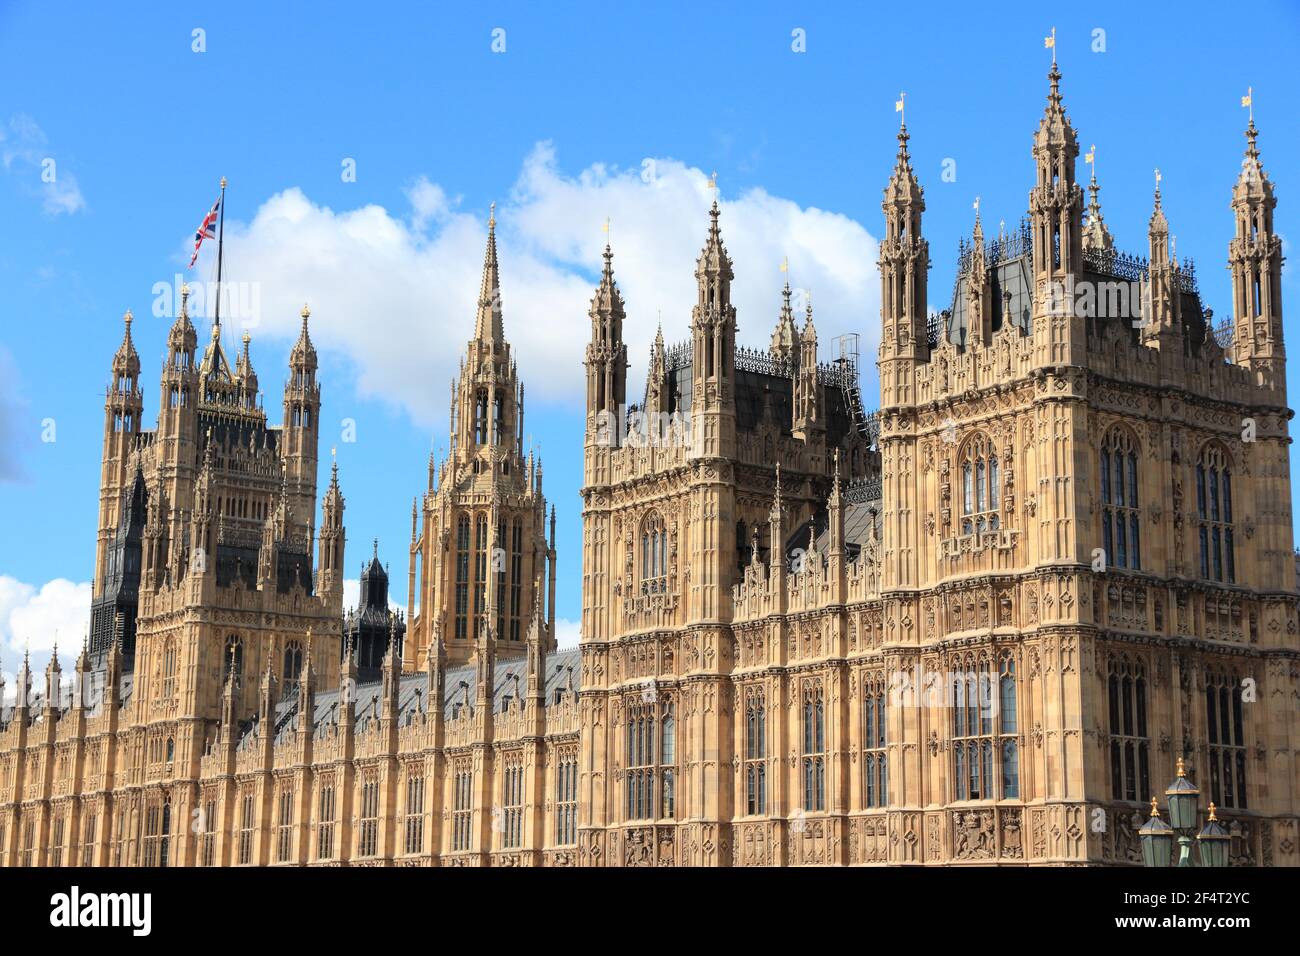 London Palace of Westminster. Architecture of London UK. British landmarks. Stock Photo